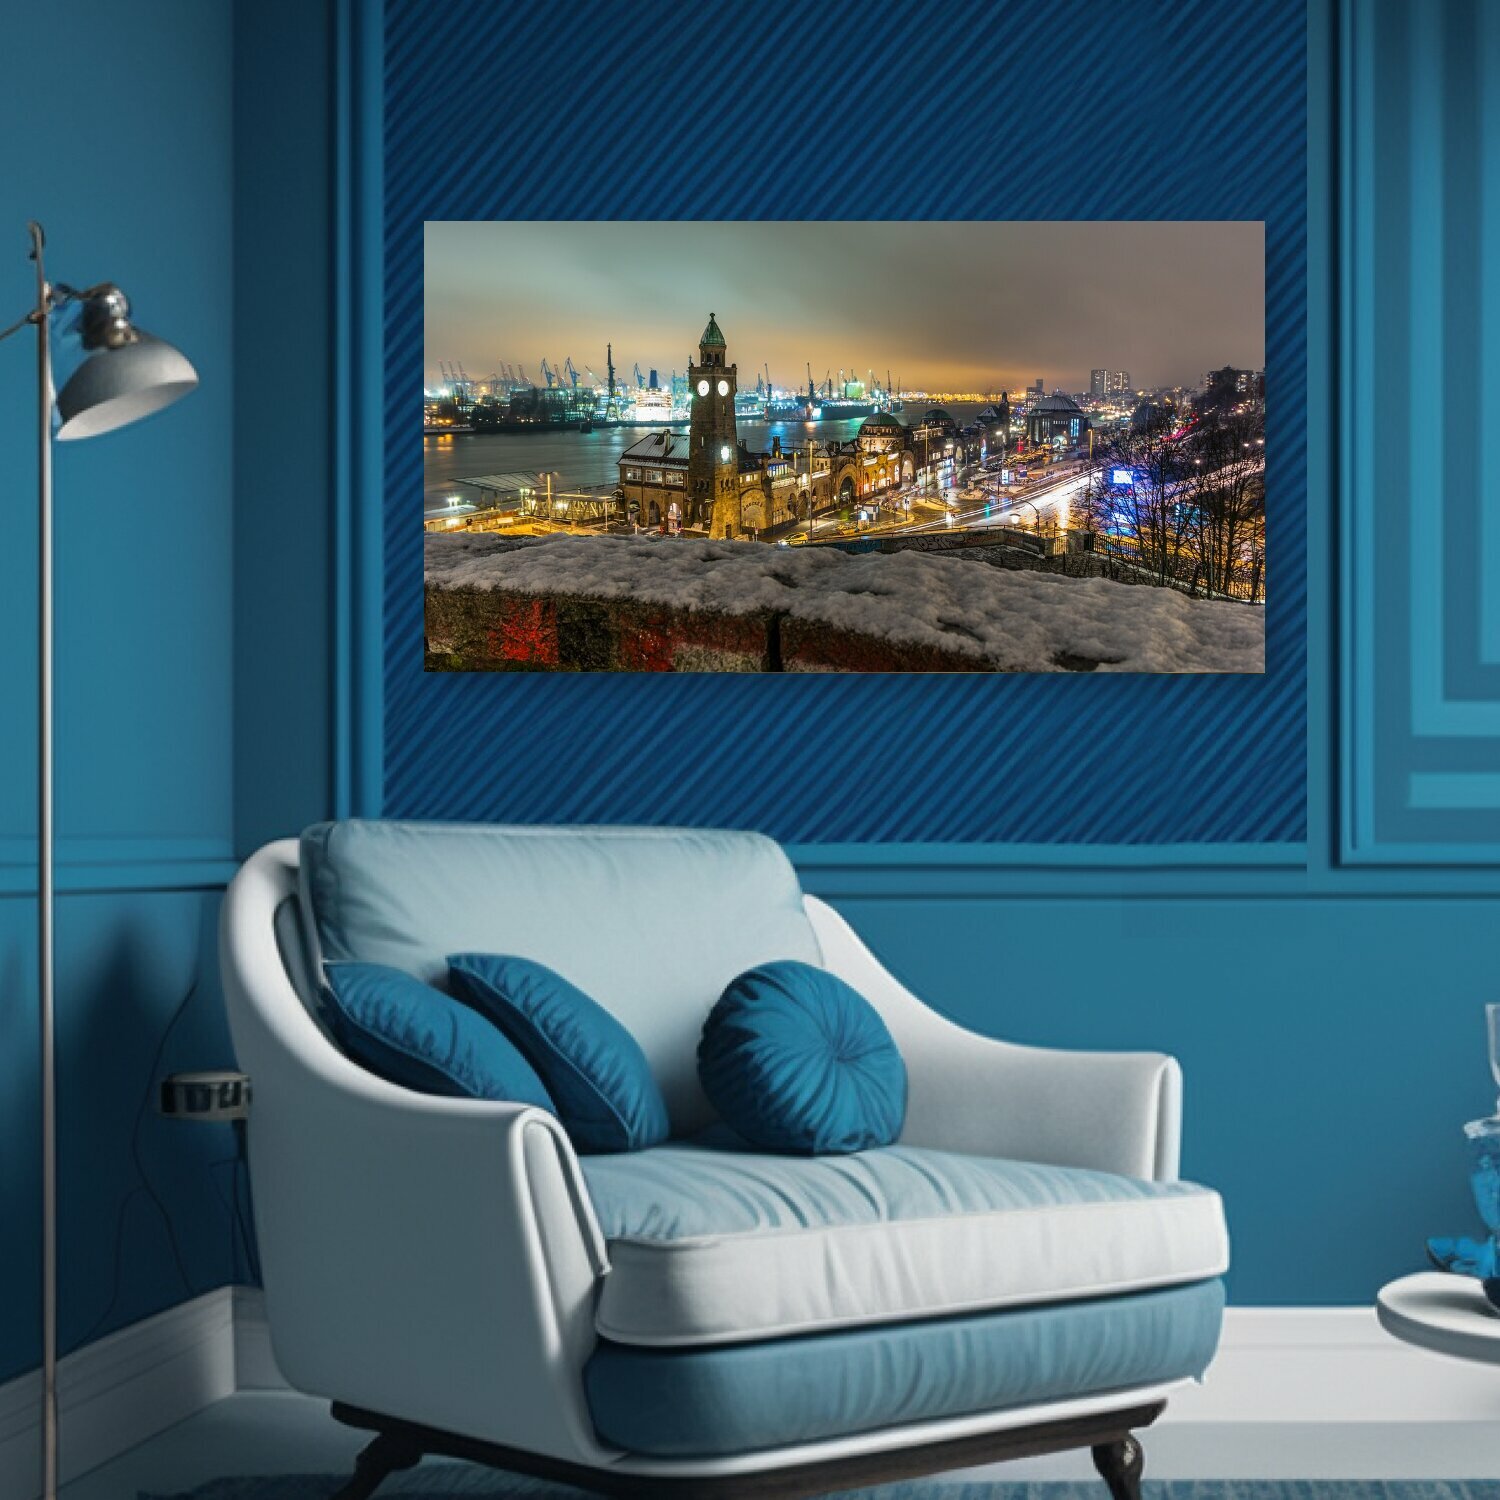 Картина на холсте "Панорама, город, городской ландшафт" на подрамнике 75х40 см. для интерьера